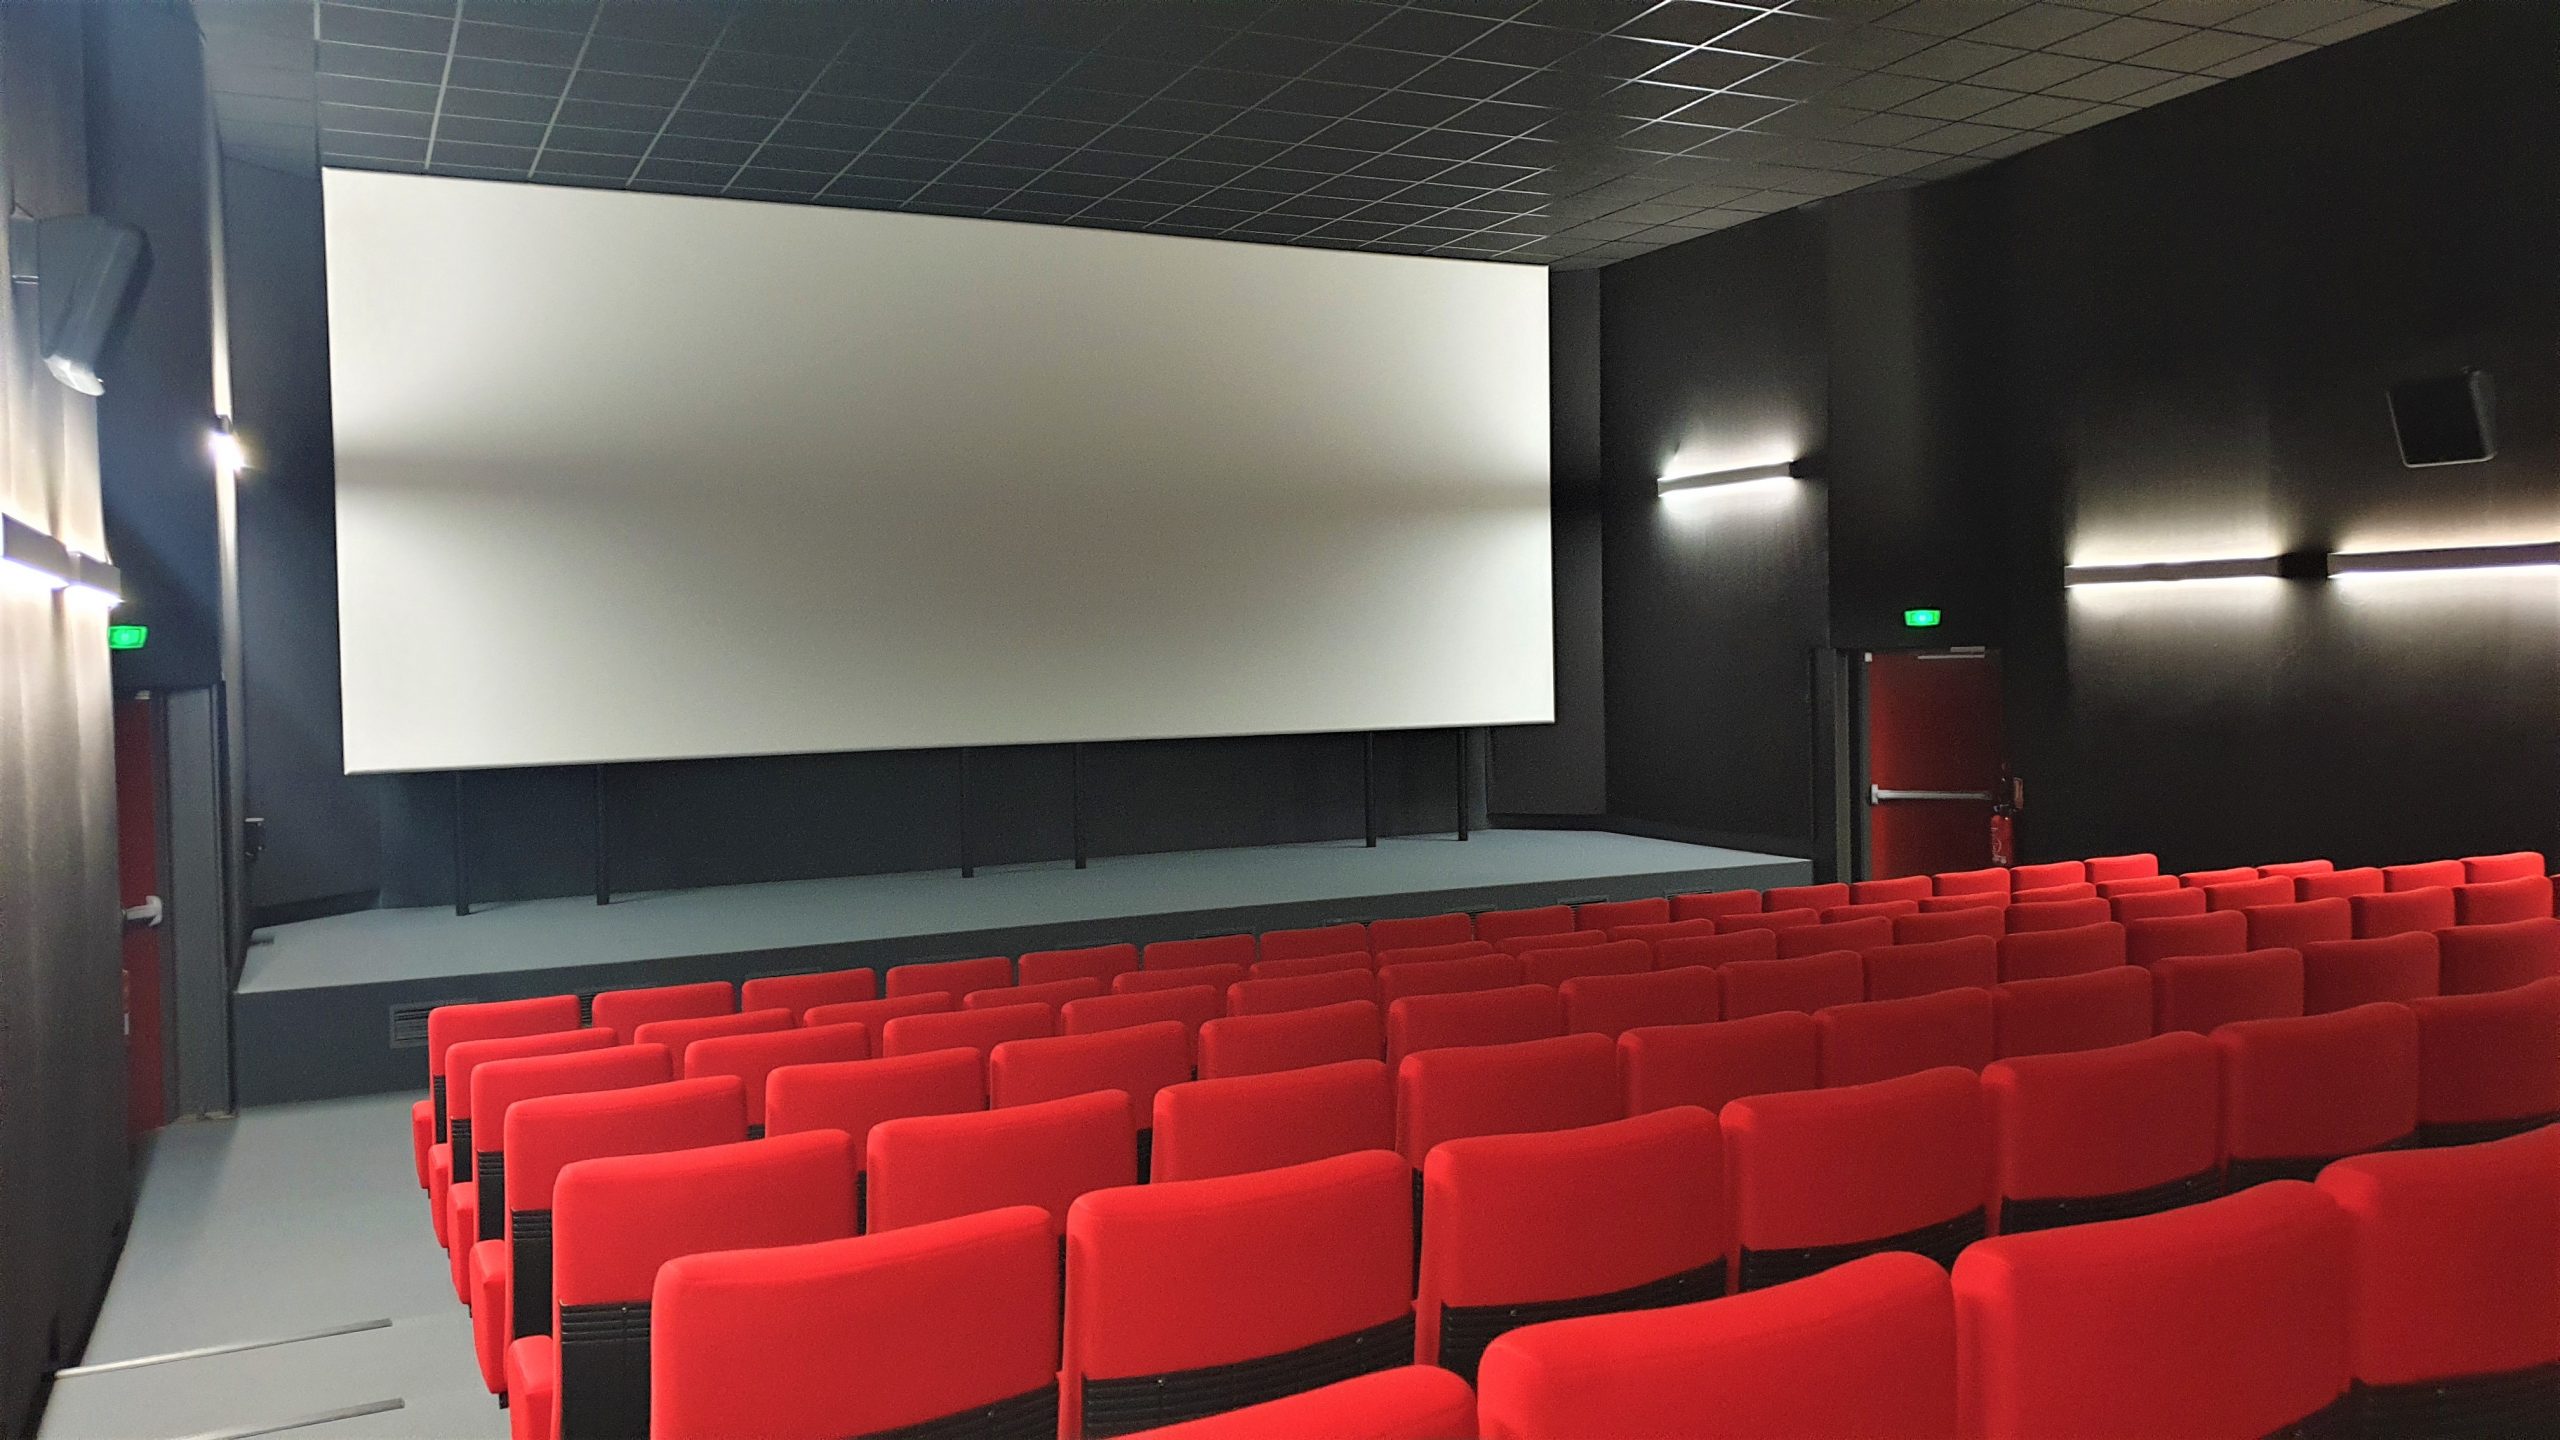 A Saint-Yrieix, le public fréquente assidûment le cinéma